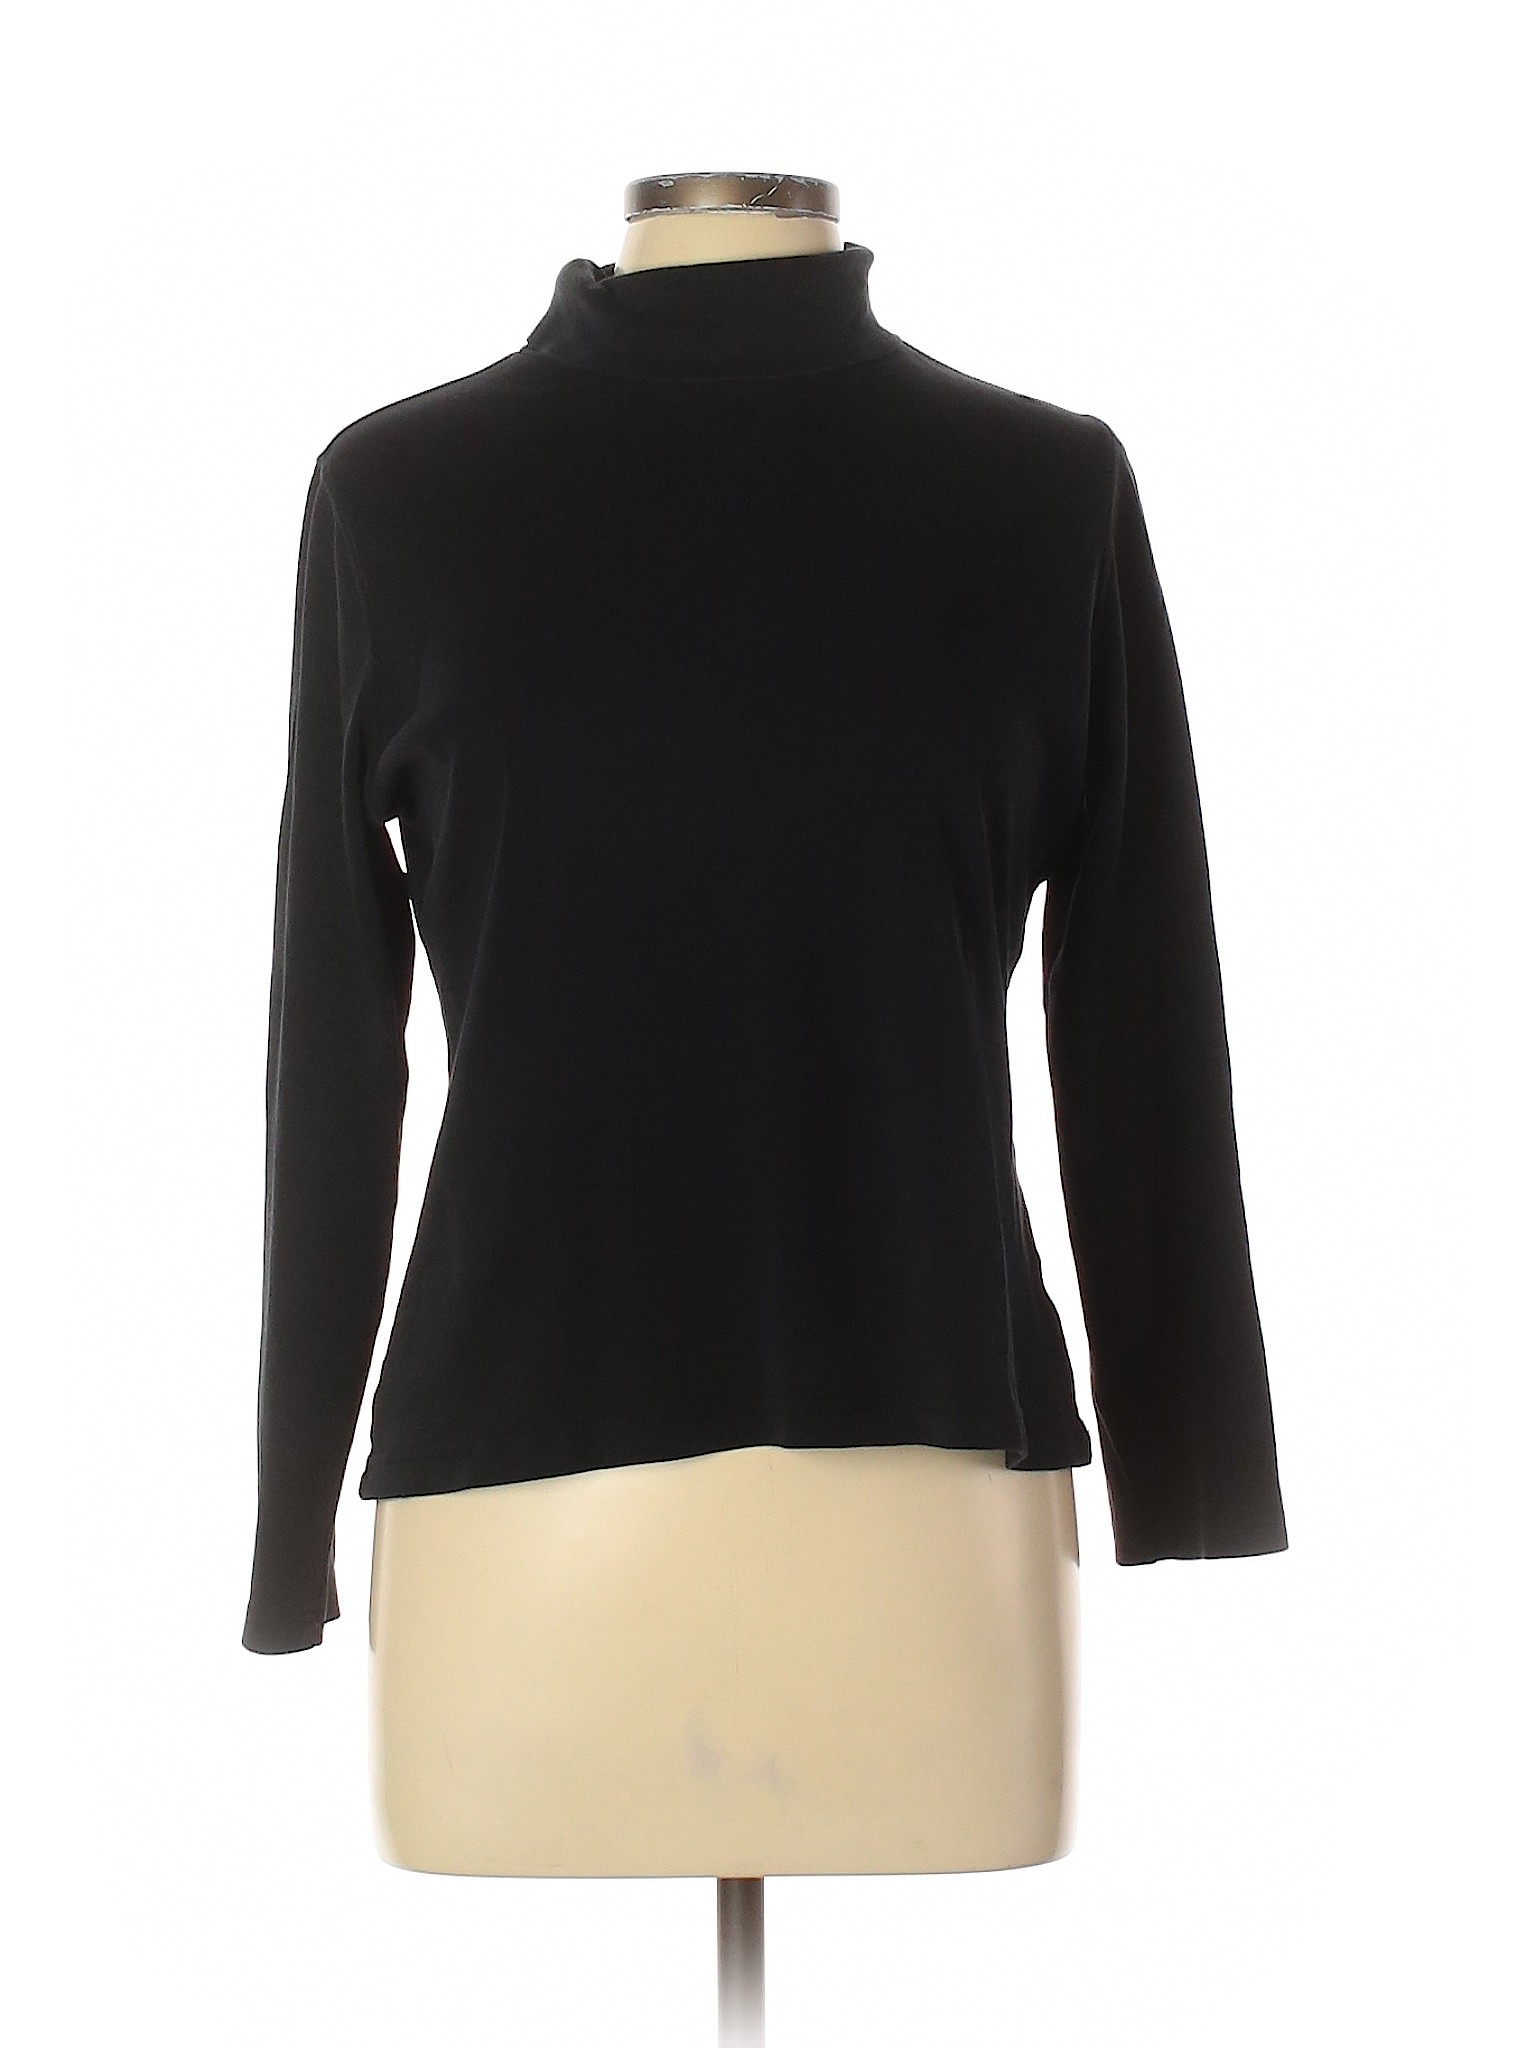 Croft & Barrow Women Black Long Sleeve Turtleneck L | eBay